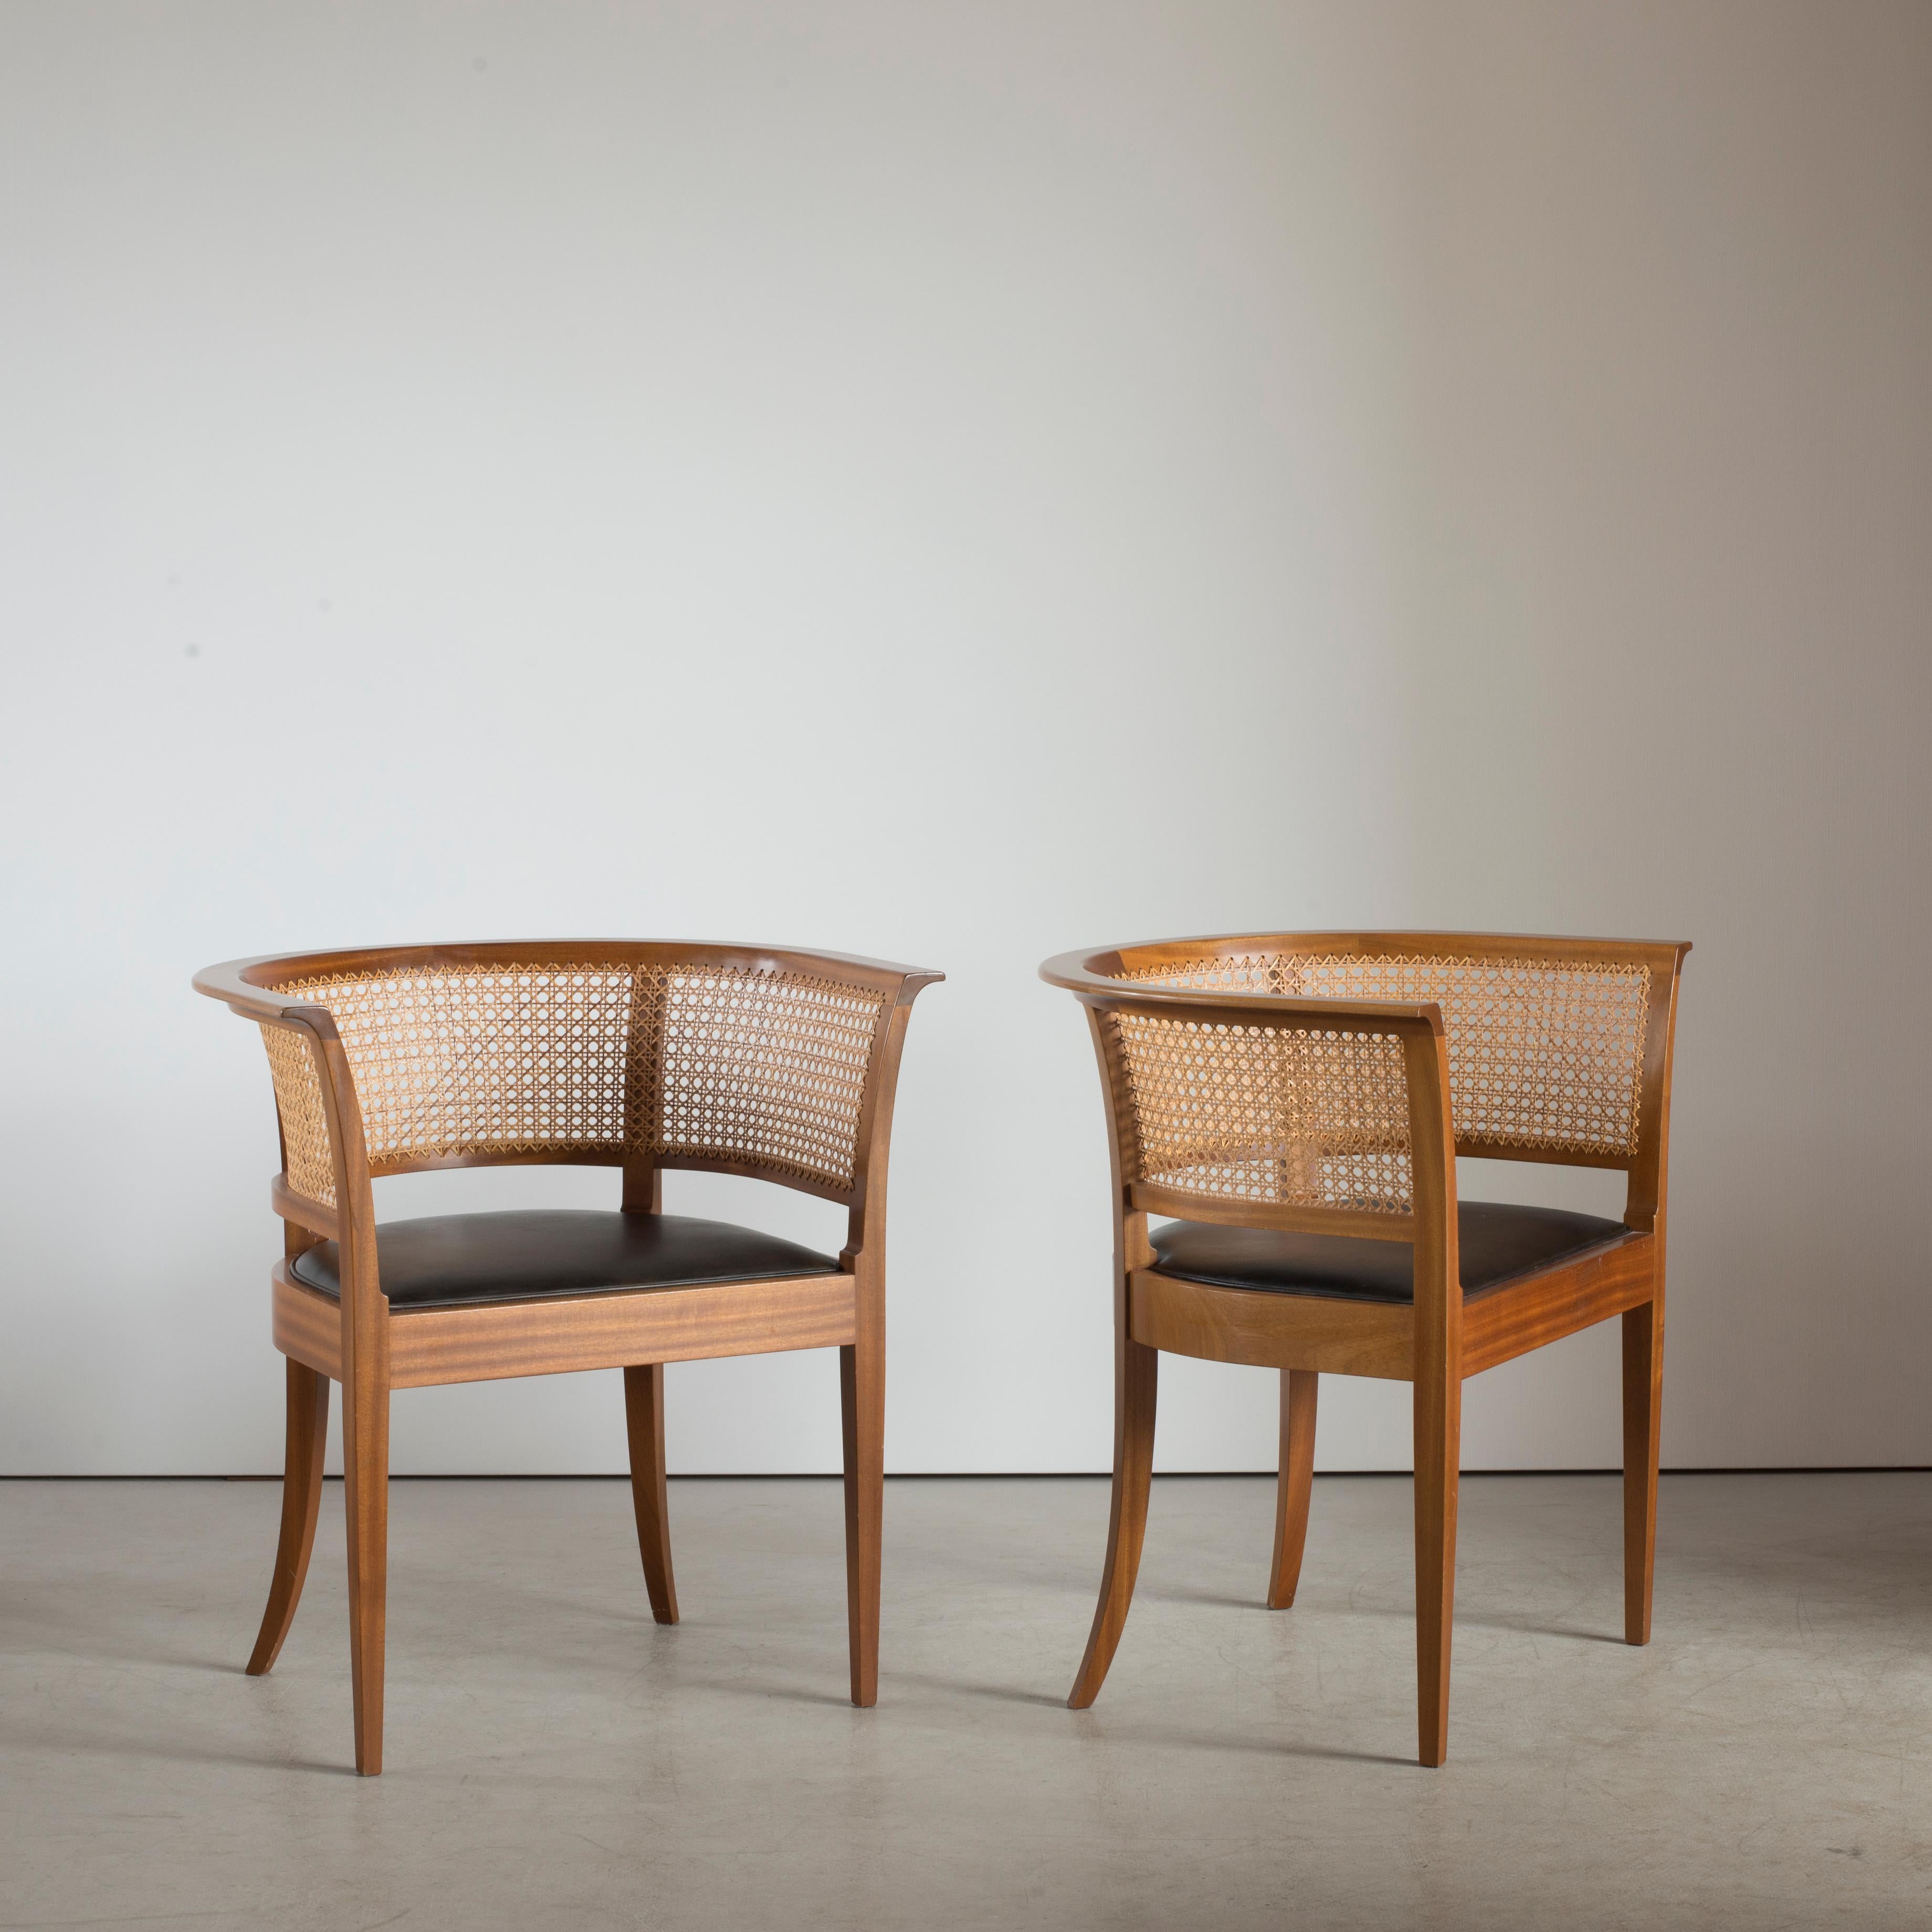 Faaborg Chair - 10 For Sale on 1stDibs | fåborgstolen, faaborg stolen,  faaborgstolen